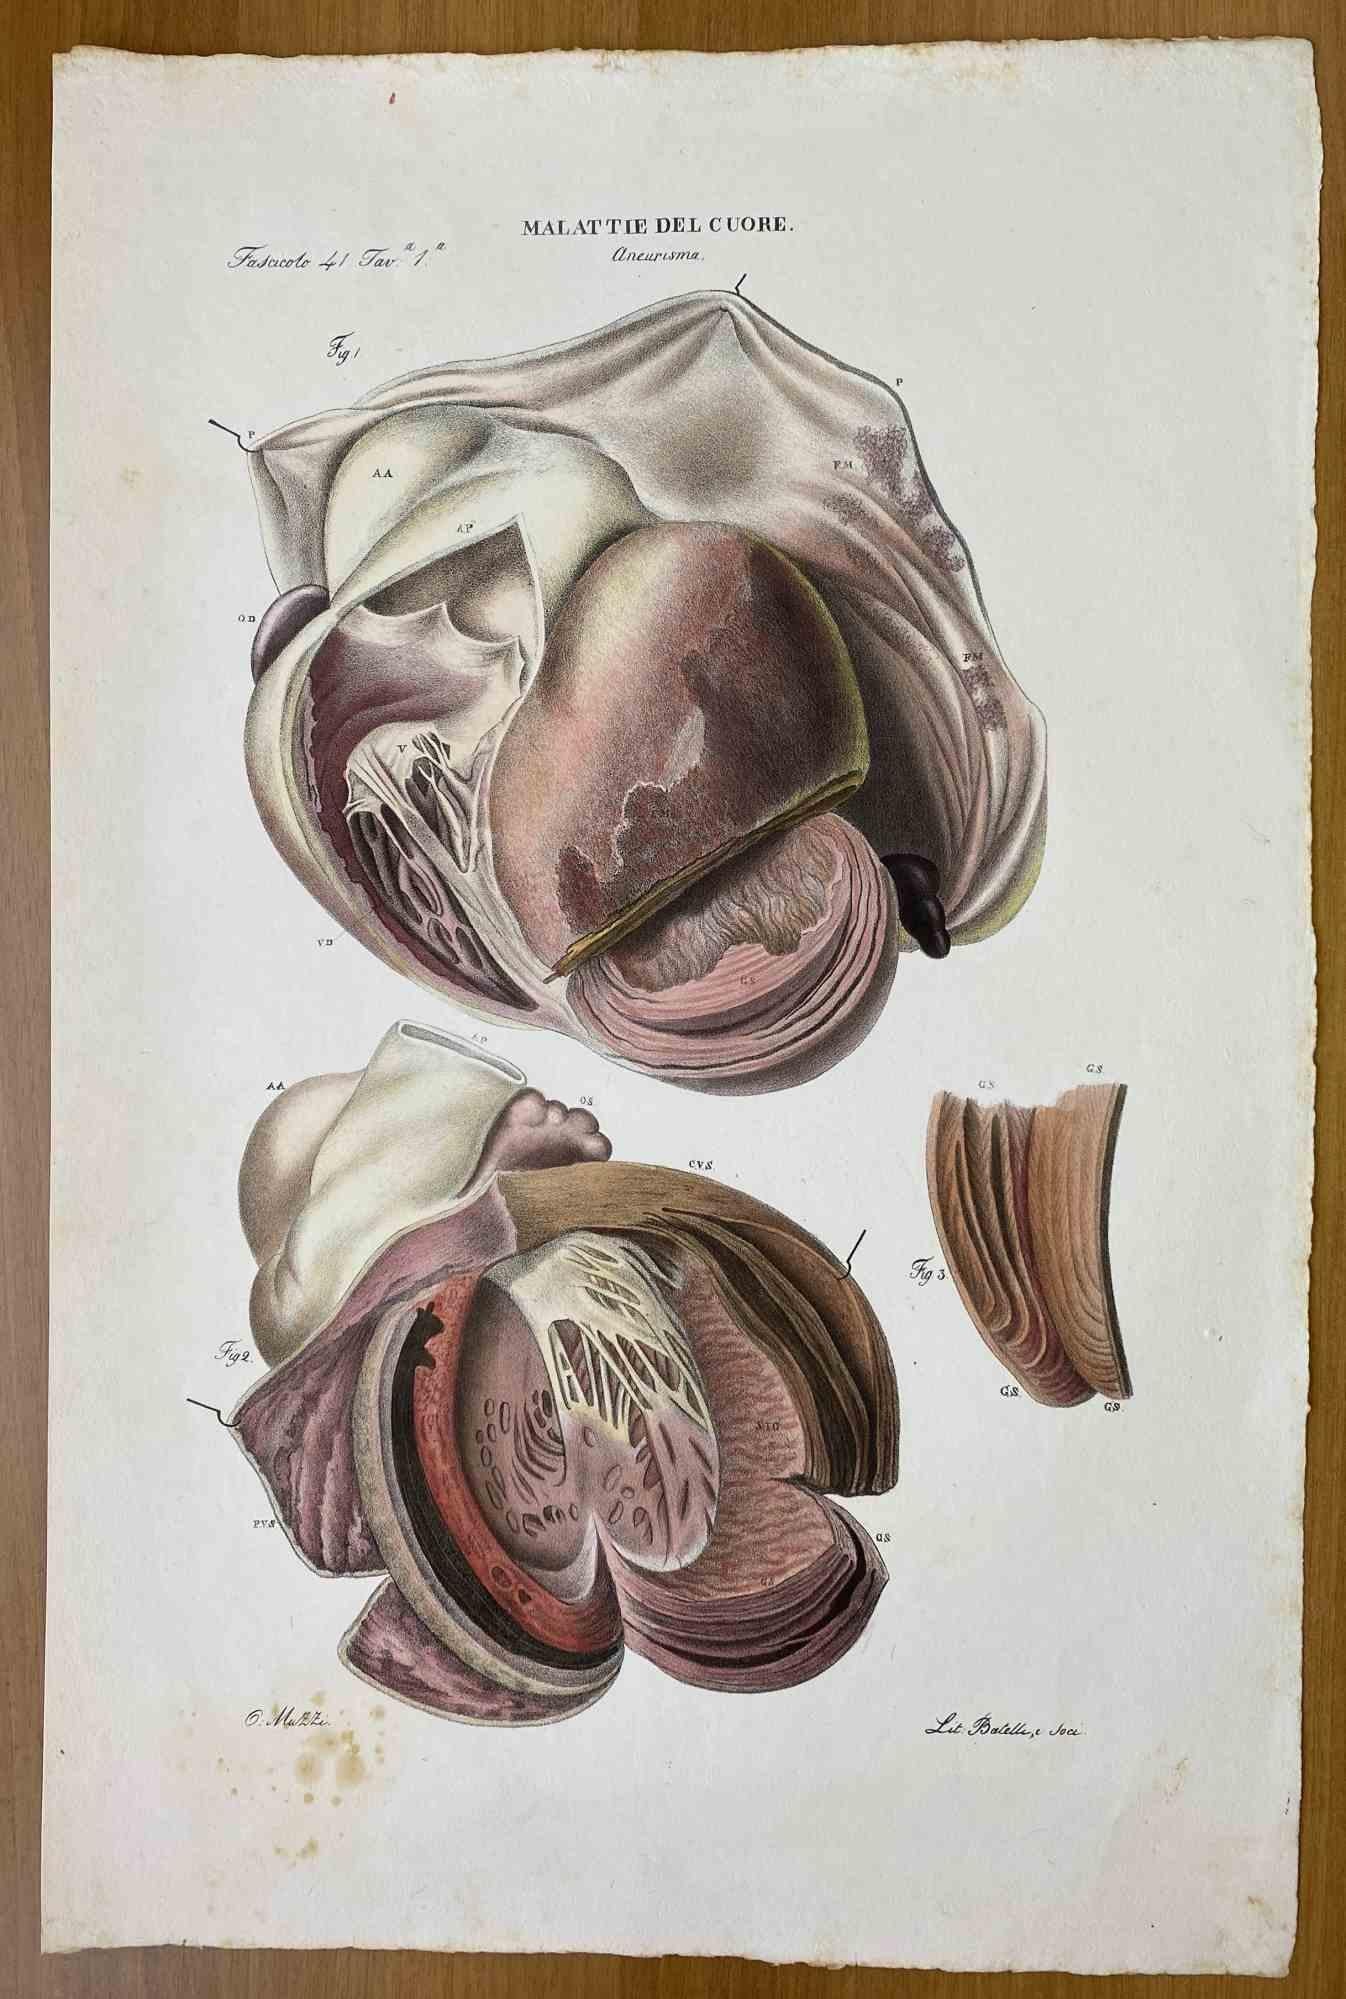 Herzkrankheiten ist eine handkolorierte Lithographie von Ottavio Muzzi für die Ausgabe von Antoine Chazal, Human Anatomy, Printers Batelli and Ridolfi, 1843.

Das Werk gehört zum Atlante generale della anatomia patologica del corpo umano von Jean